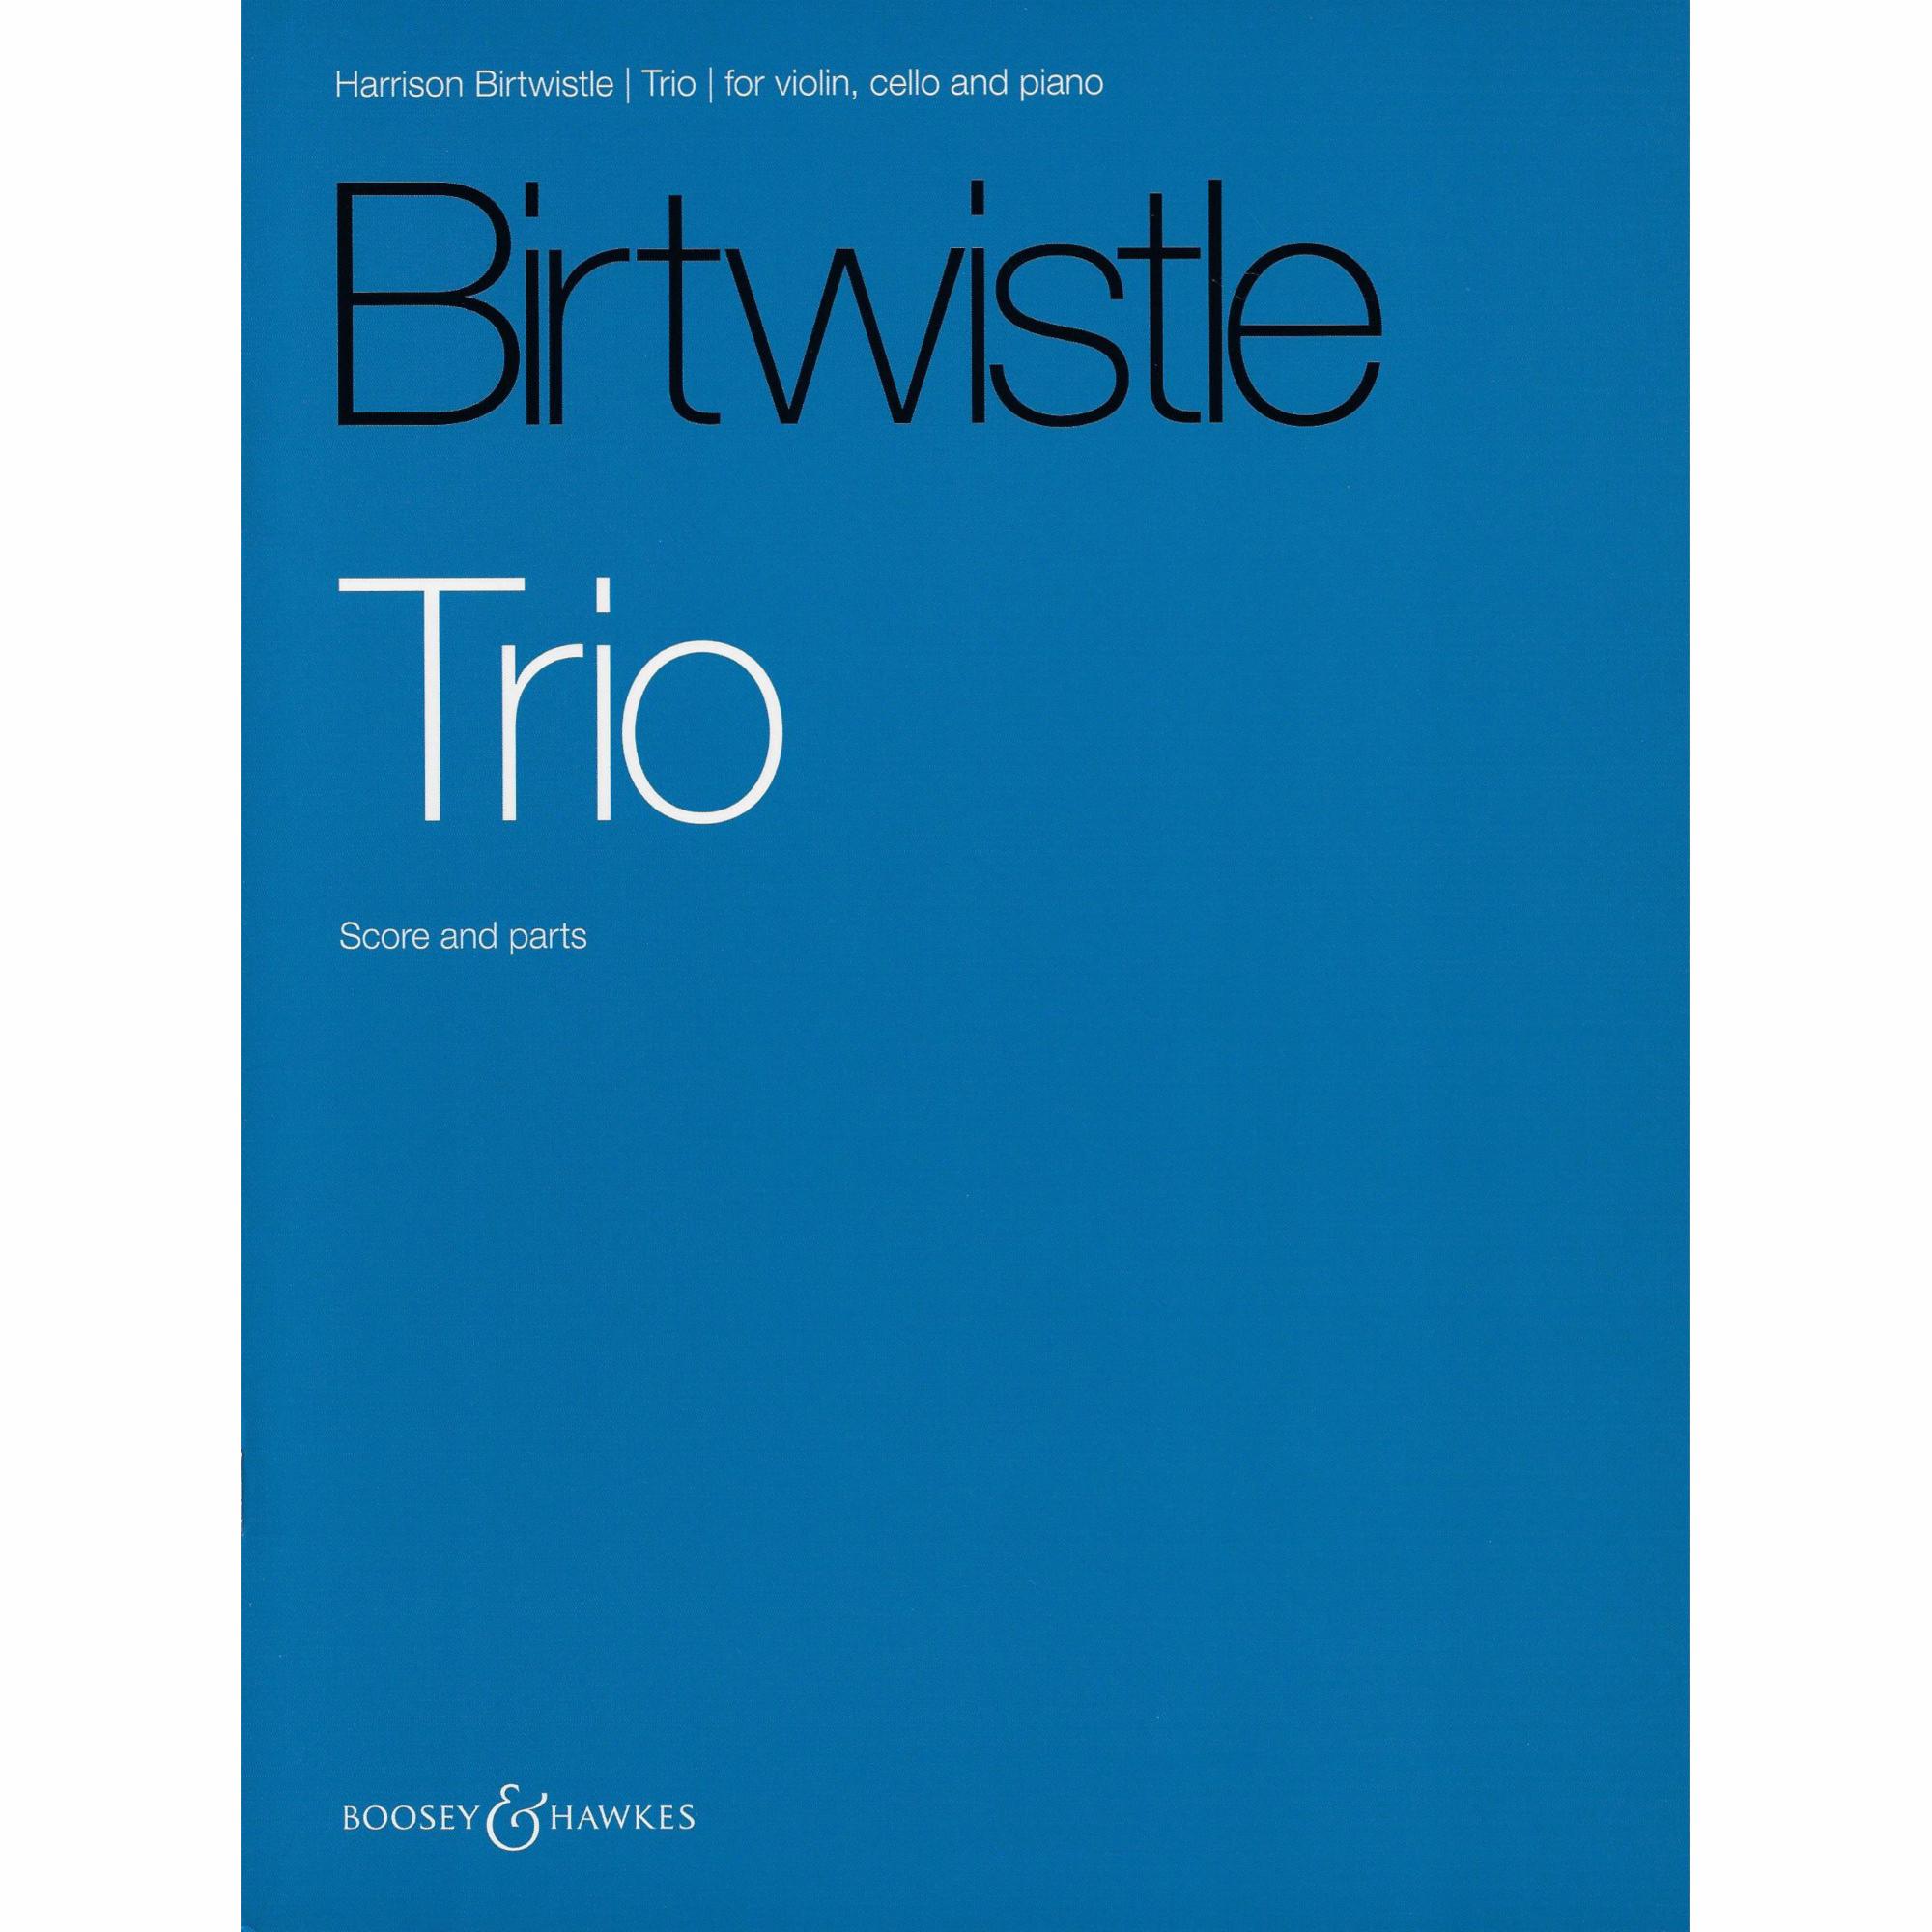 Birtwistle -- Trio for Violin, Cello, and Piano